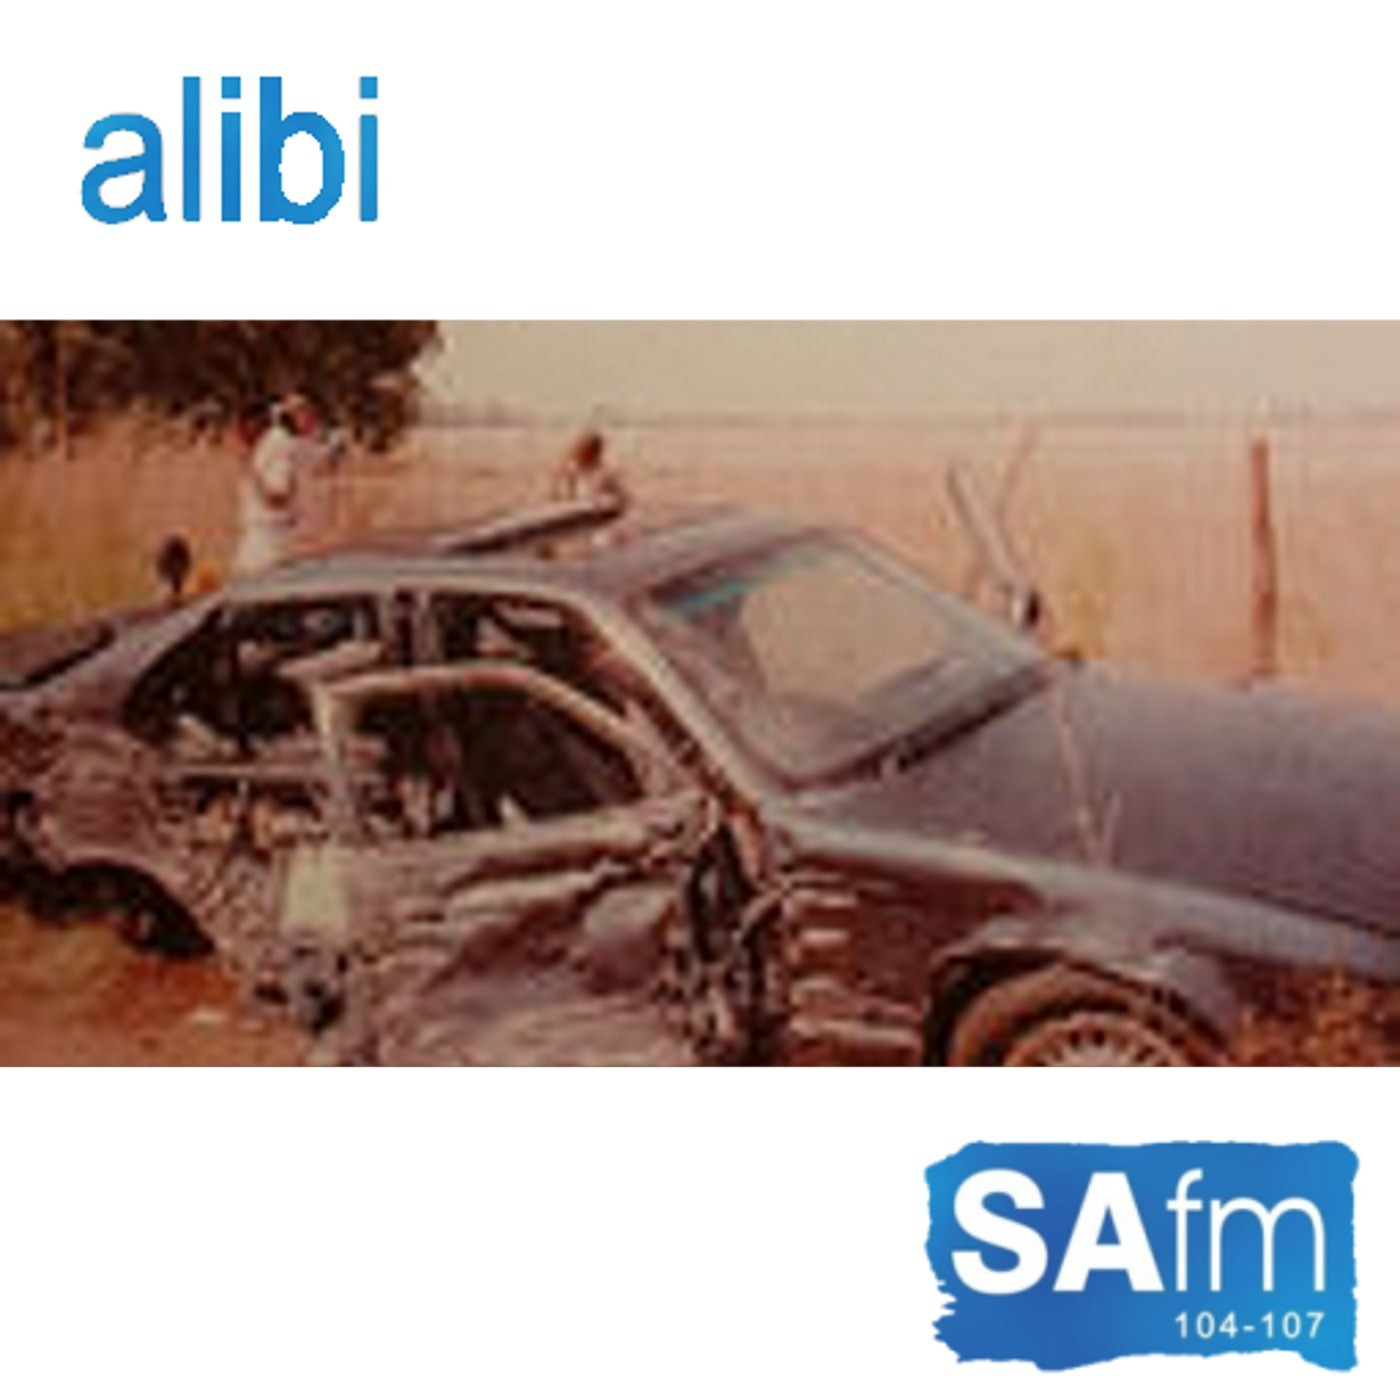 Alibi radio series - Episode 8